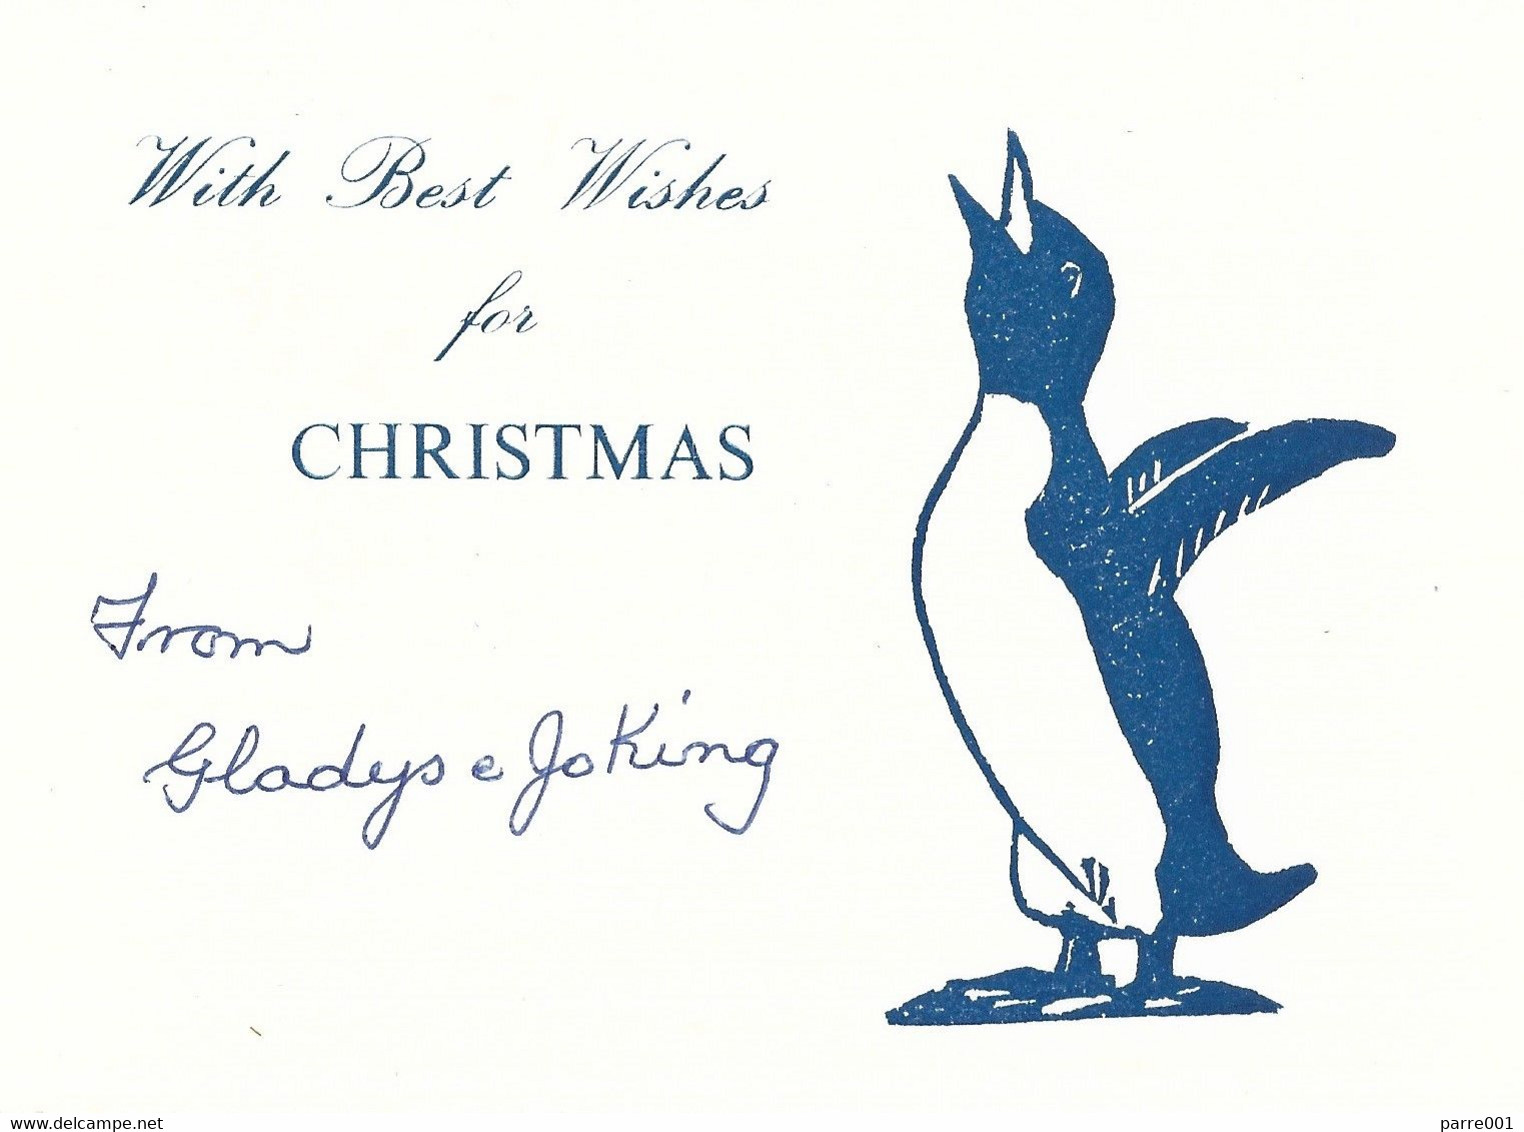 Falkland Islands Christmas Card - Falkland